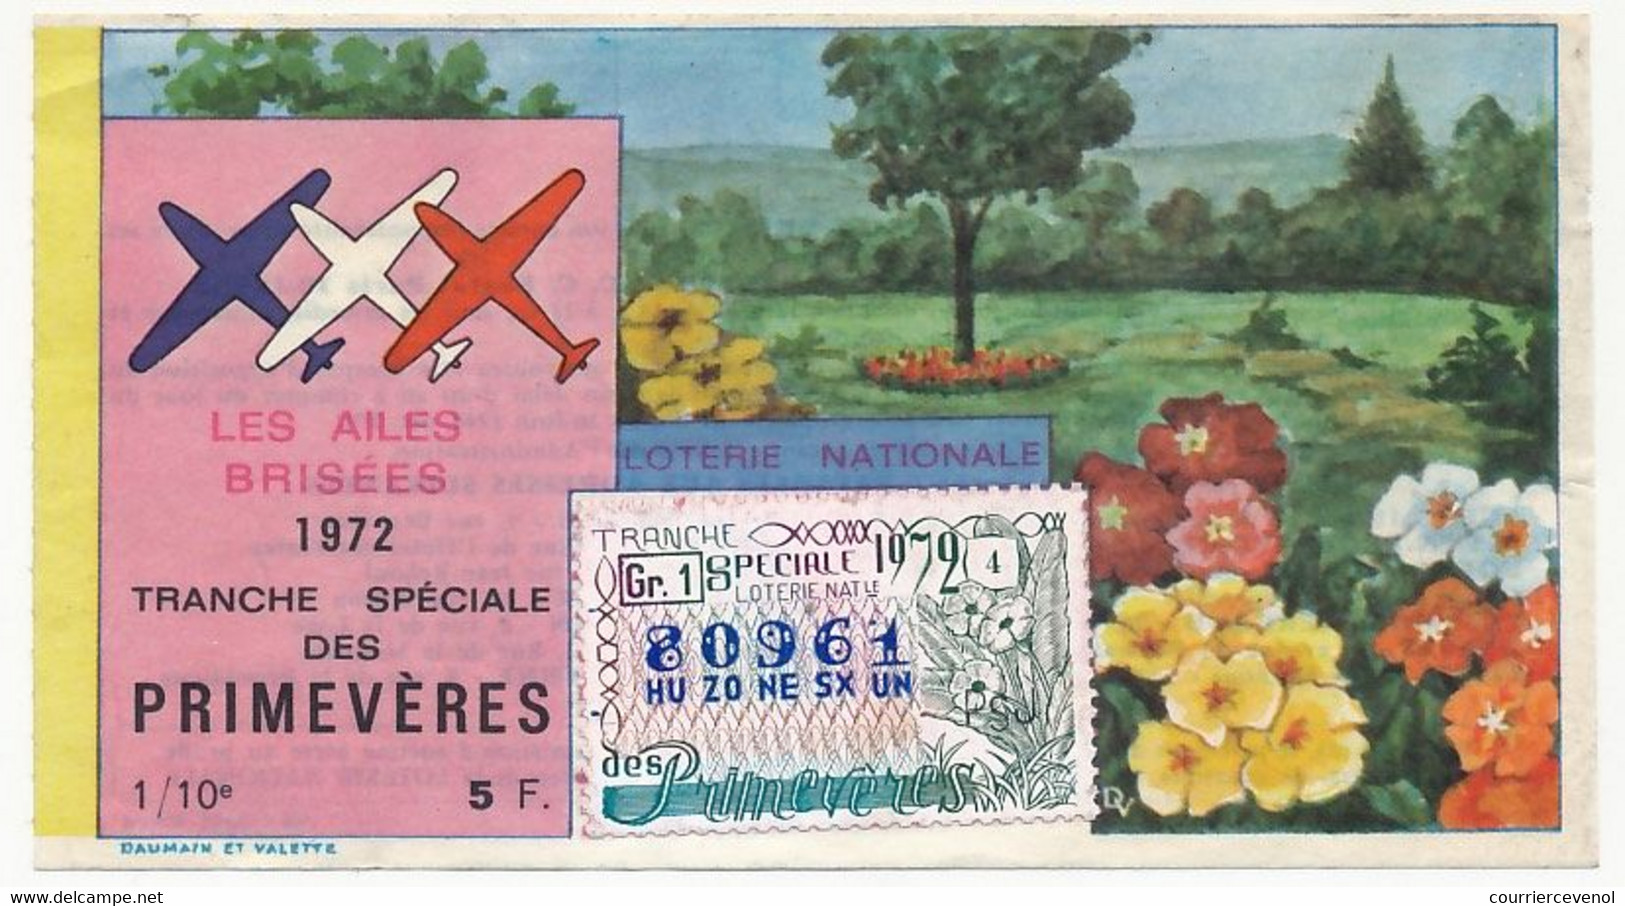 FRANCE - Loterie Nationale - 1/10ème - Les Ailes Brisées - Tranche Spéciale Des Primevères - 1972 - Lotterielose